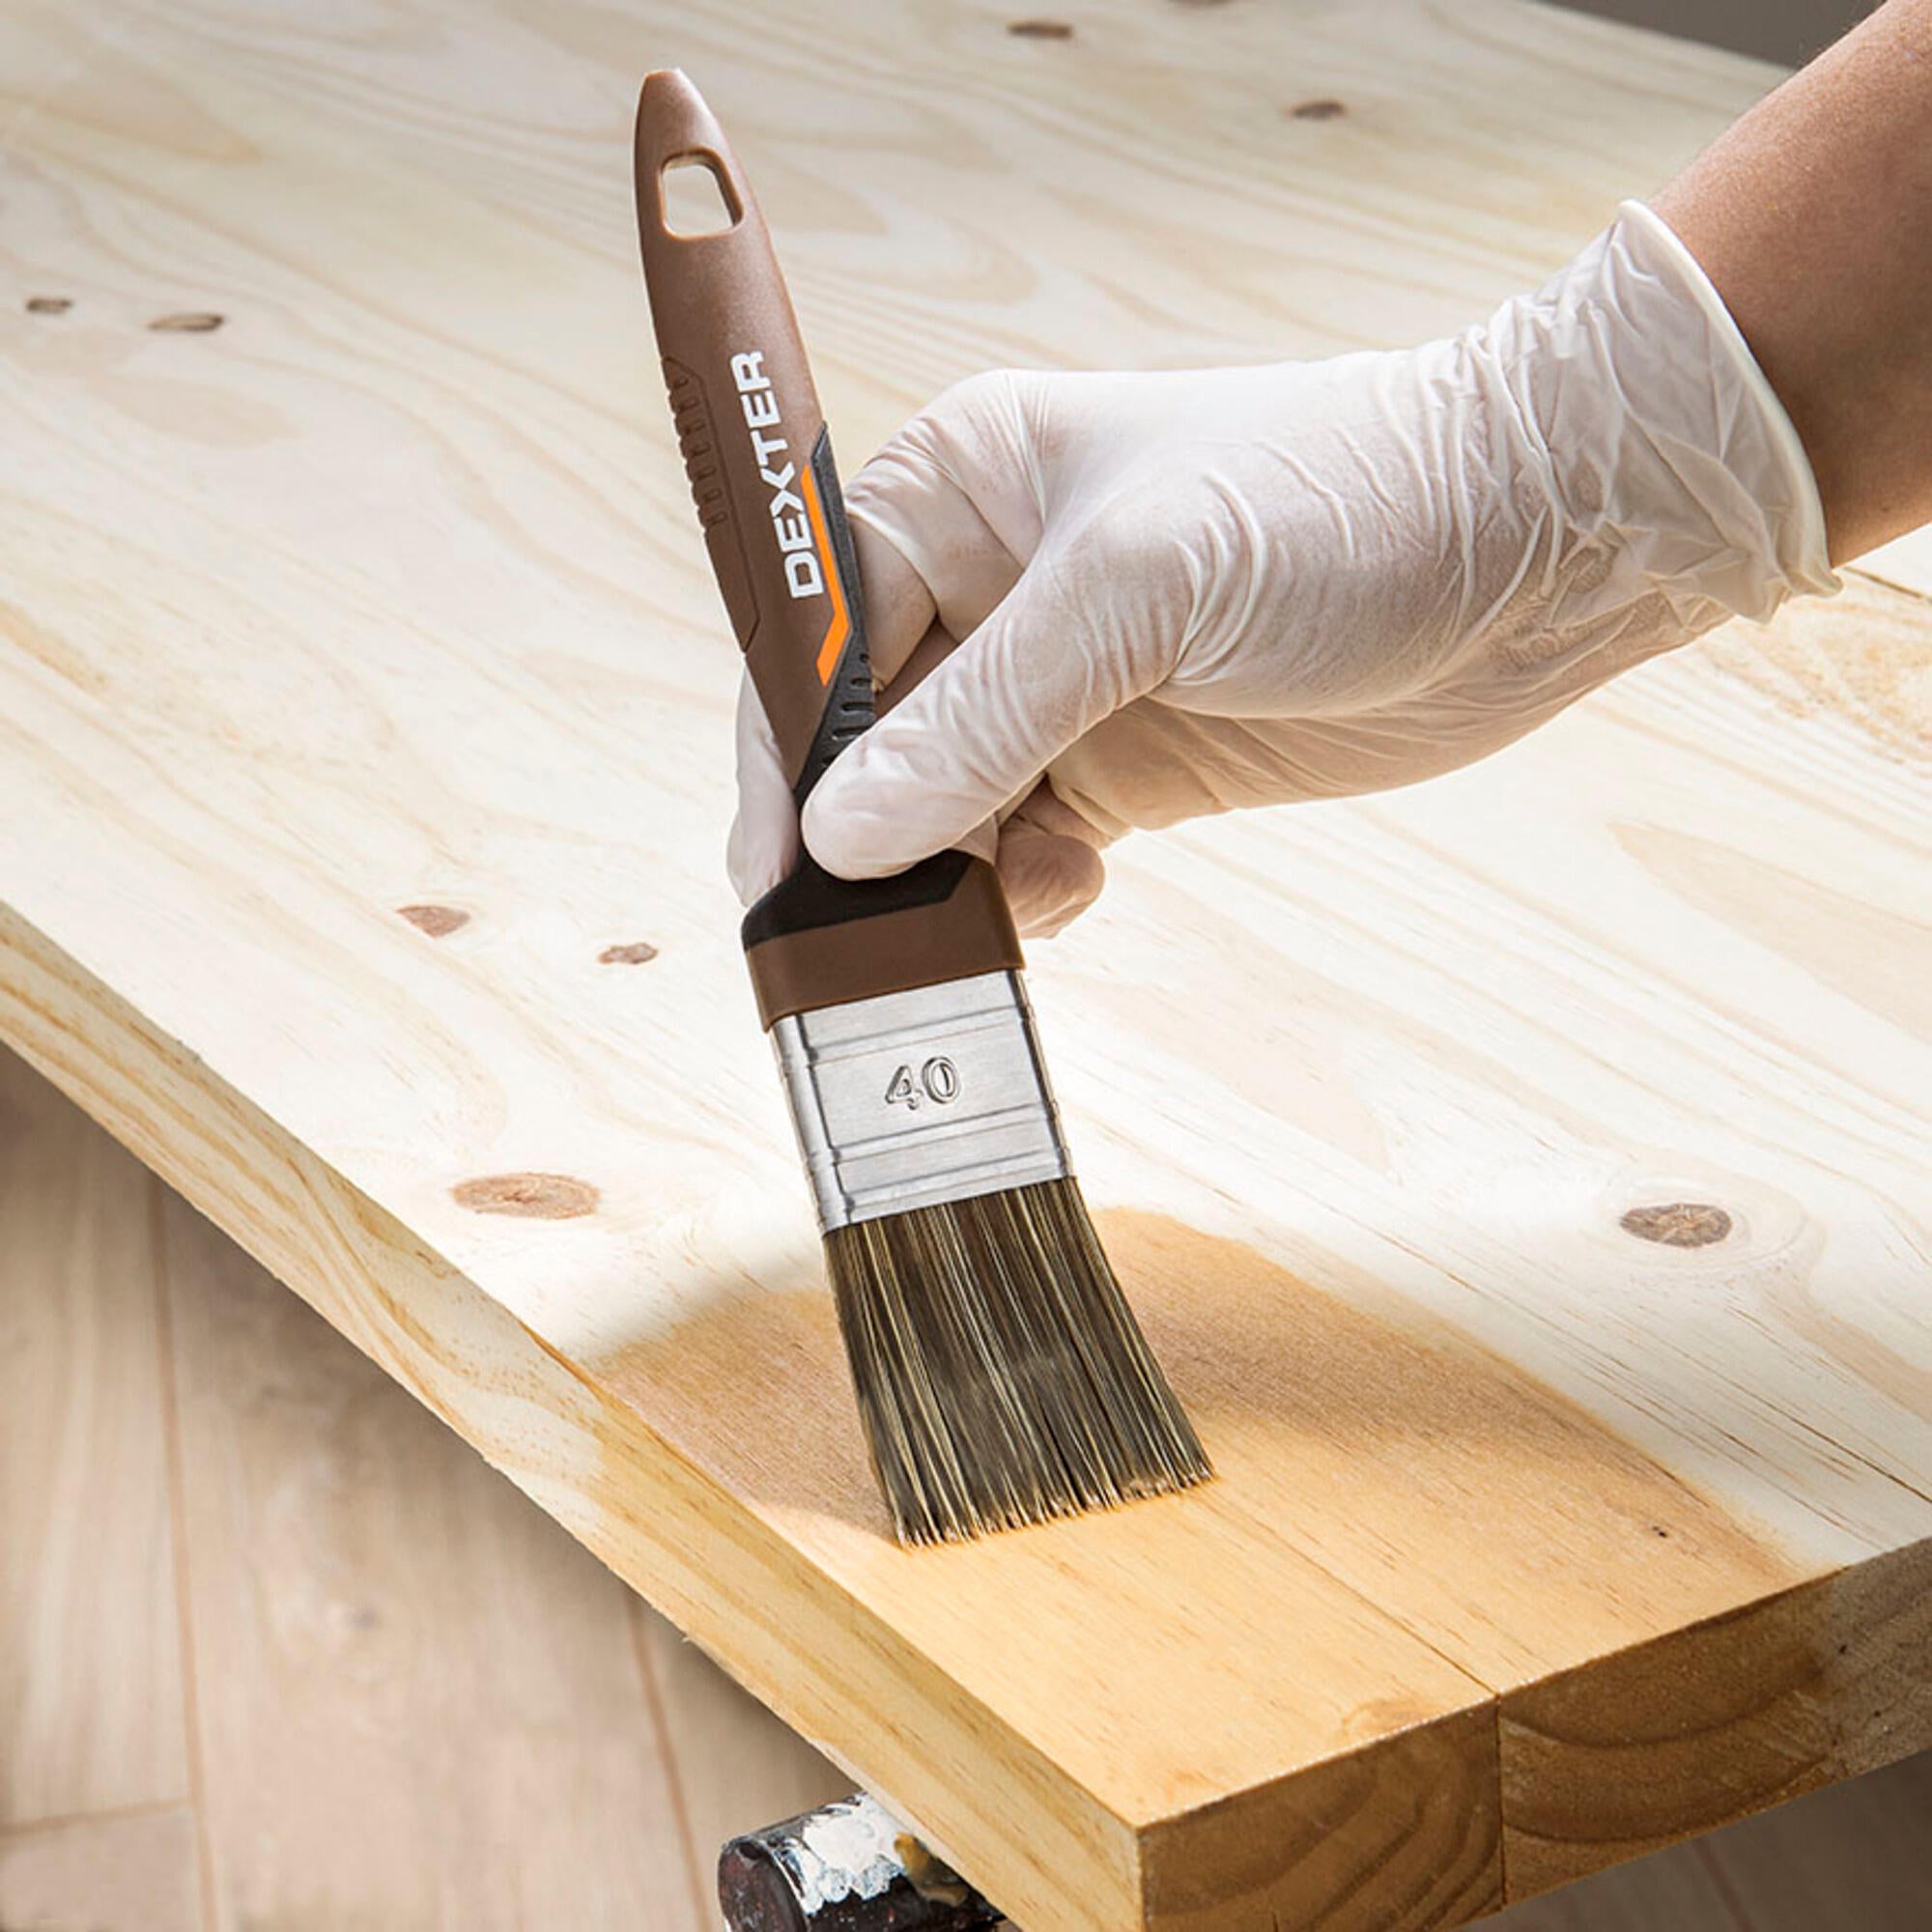 Cómo quitar pintura de la madera rápido y fácil - Bien hecho